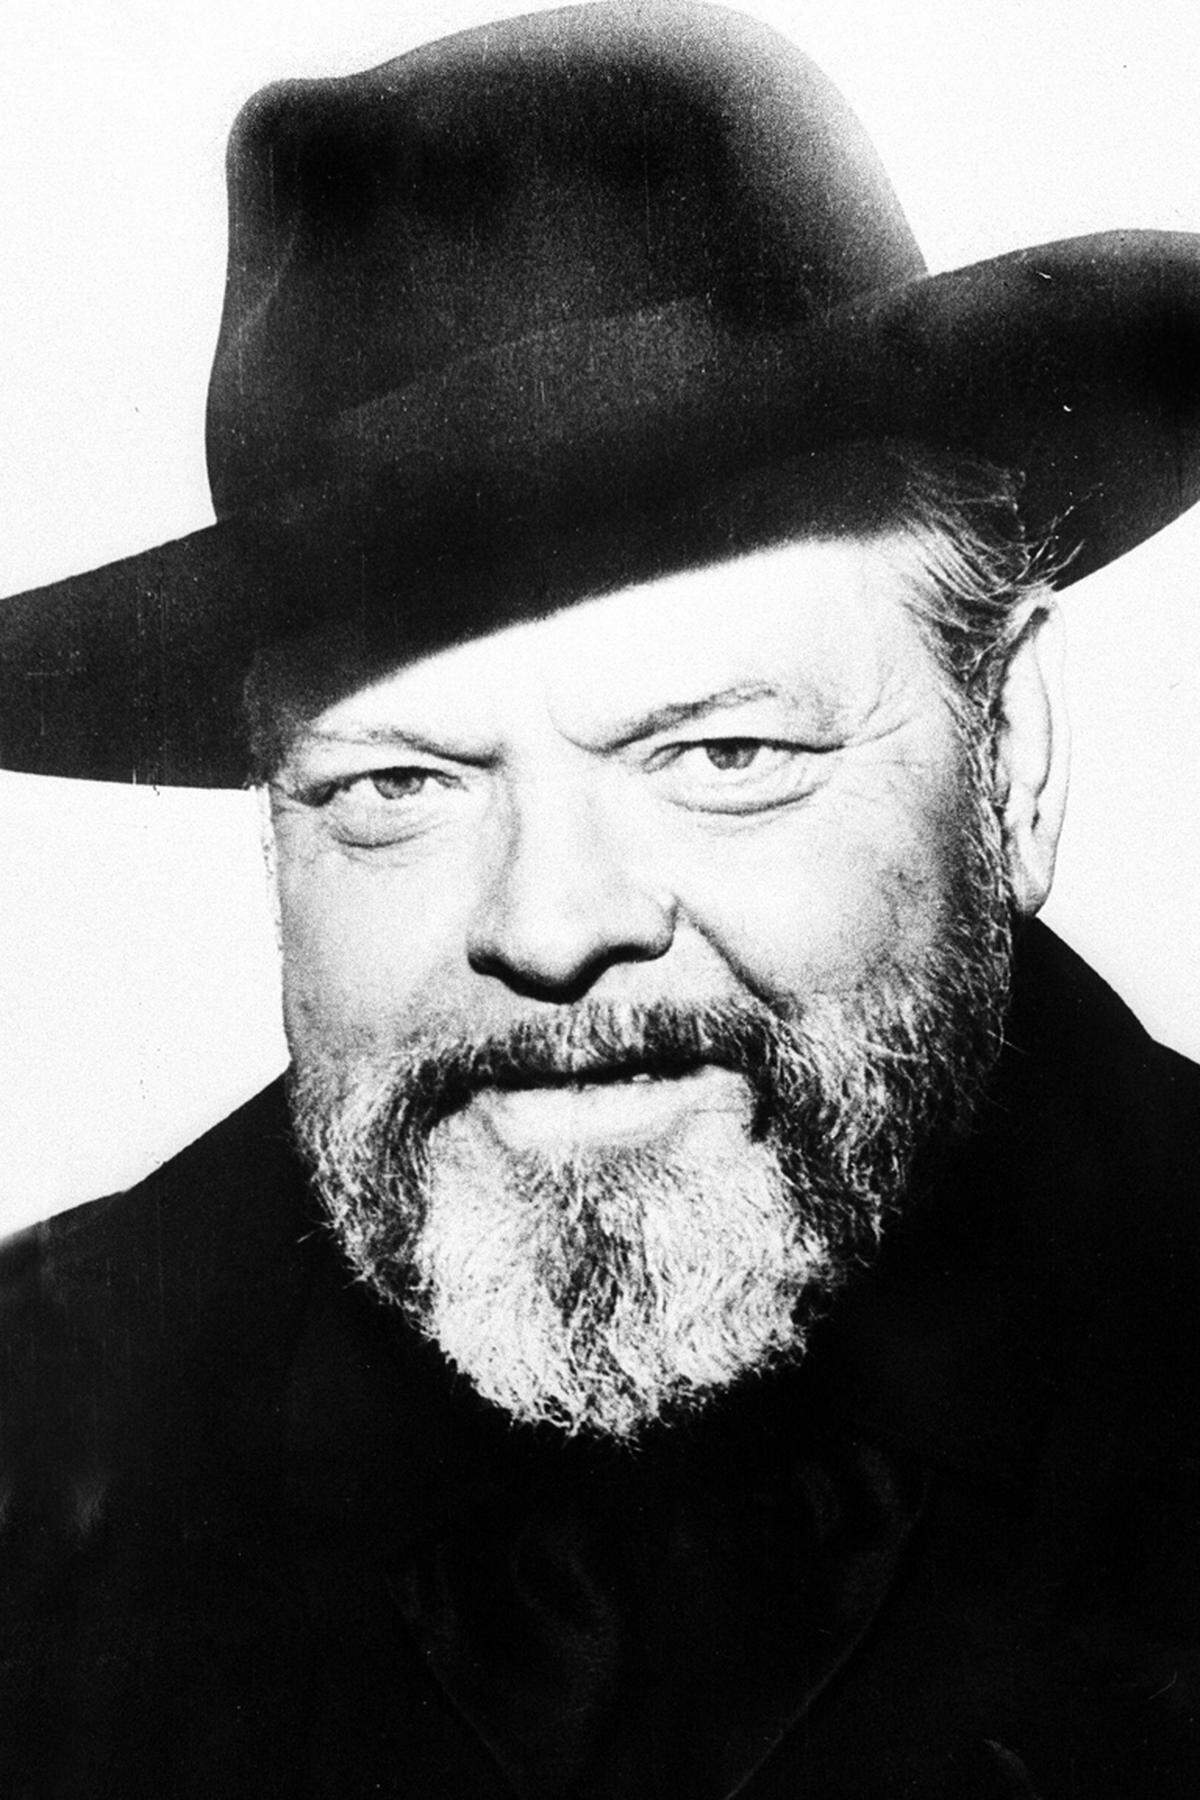 Welles reiste um die Welt, drehte in Europa und in Hollywood, wieder in Europa und wieder in Hollywood. Er machte seltsame Whiskey-Werbespots in Japan, die offenbar Vorlage für die Bill-Murray-Szene in "Lost in Translation" waren. "Ich will immer höchste Perfektion", sagt er darin, am Glas nippend. Und so war Welles. Immer alles perfekt. Und immer ein Glas oder ein Teller in der Nähe. Denn das Genie arbeitete nicht nur exzessiv, er aß auch exzessiv. Jahrzehnte litt er unter Fettleibigkeit.